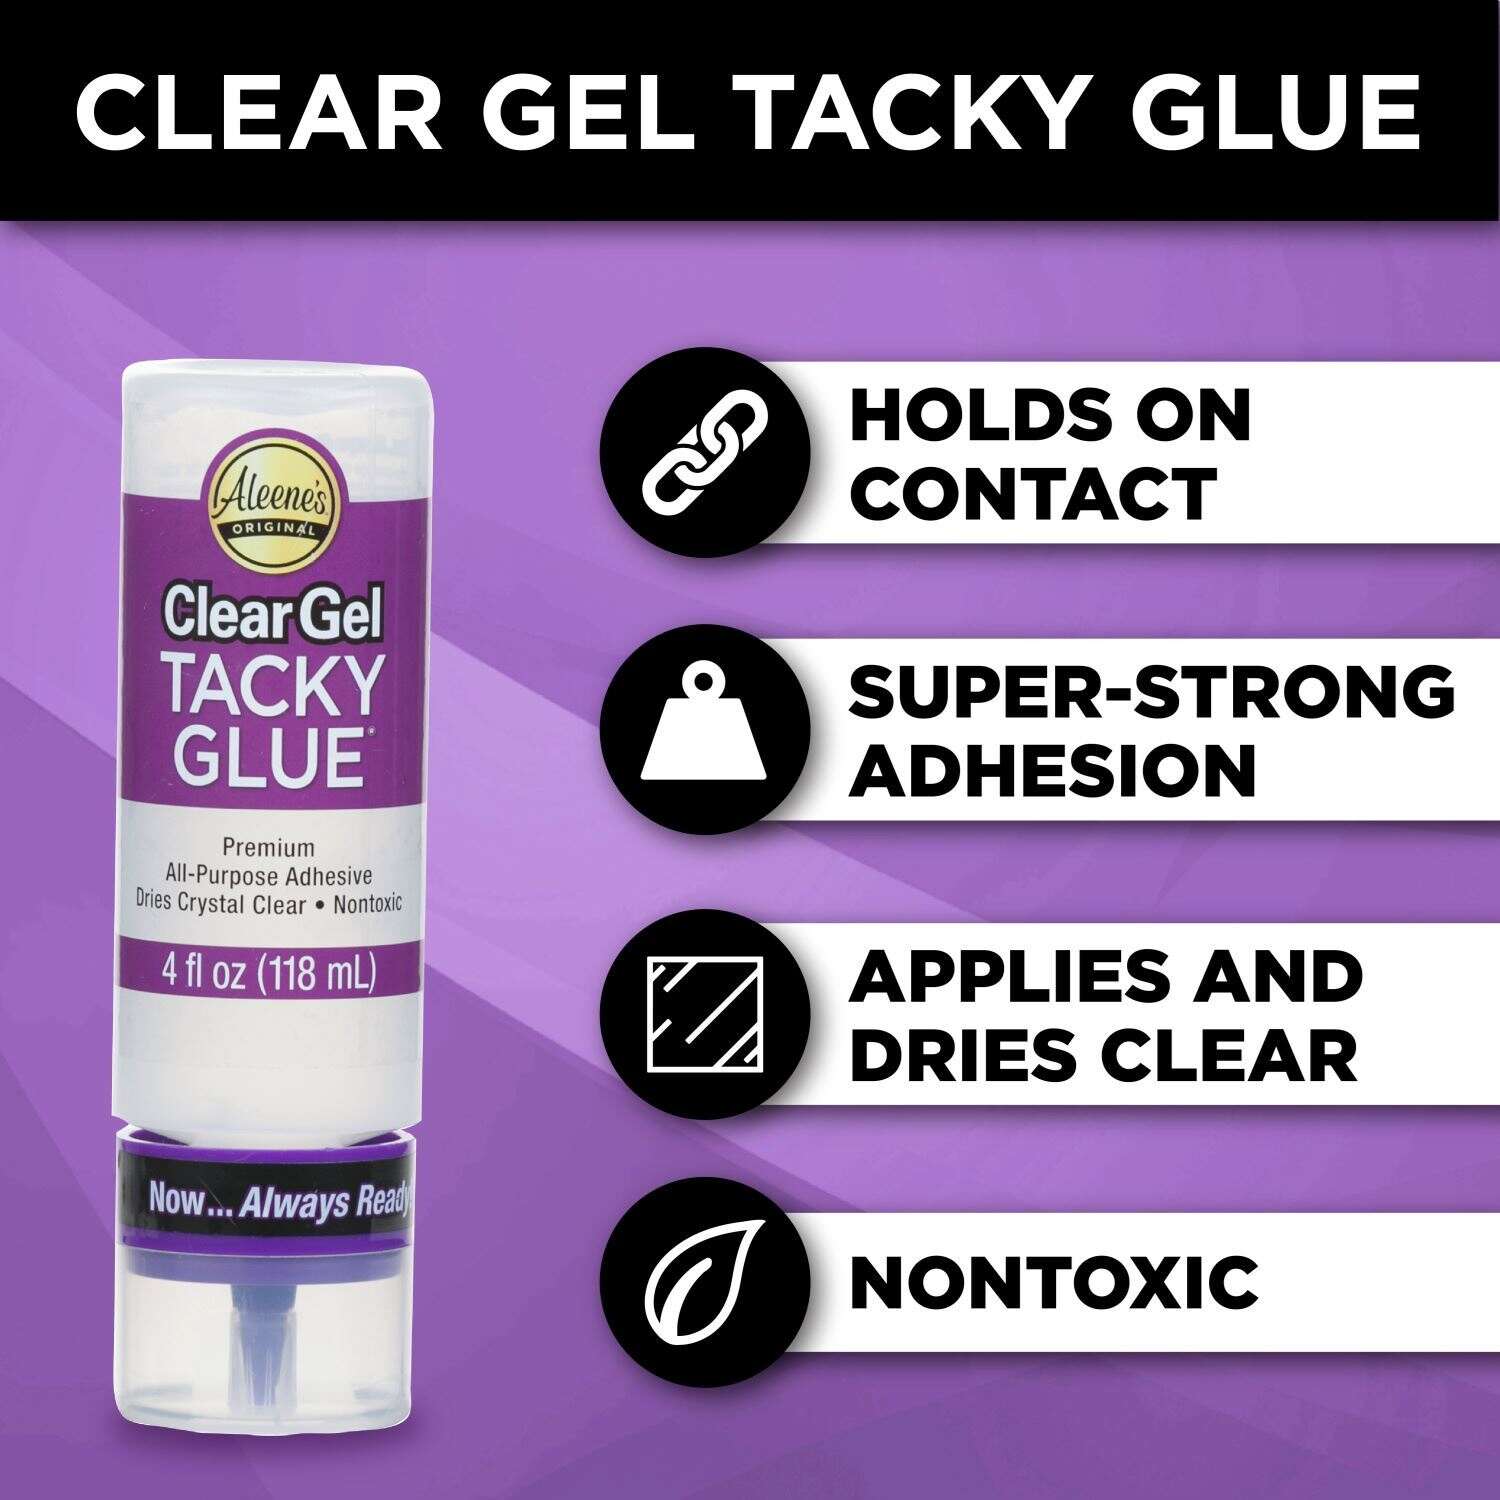 Aleene's Always Ready Clear Gel Tacky Glue 4 oz.